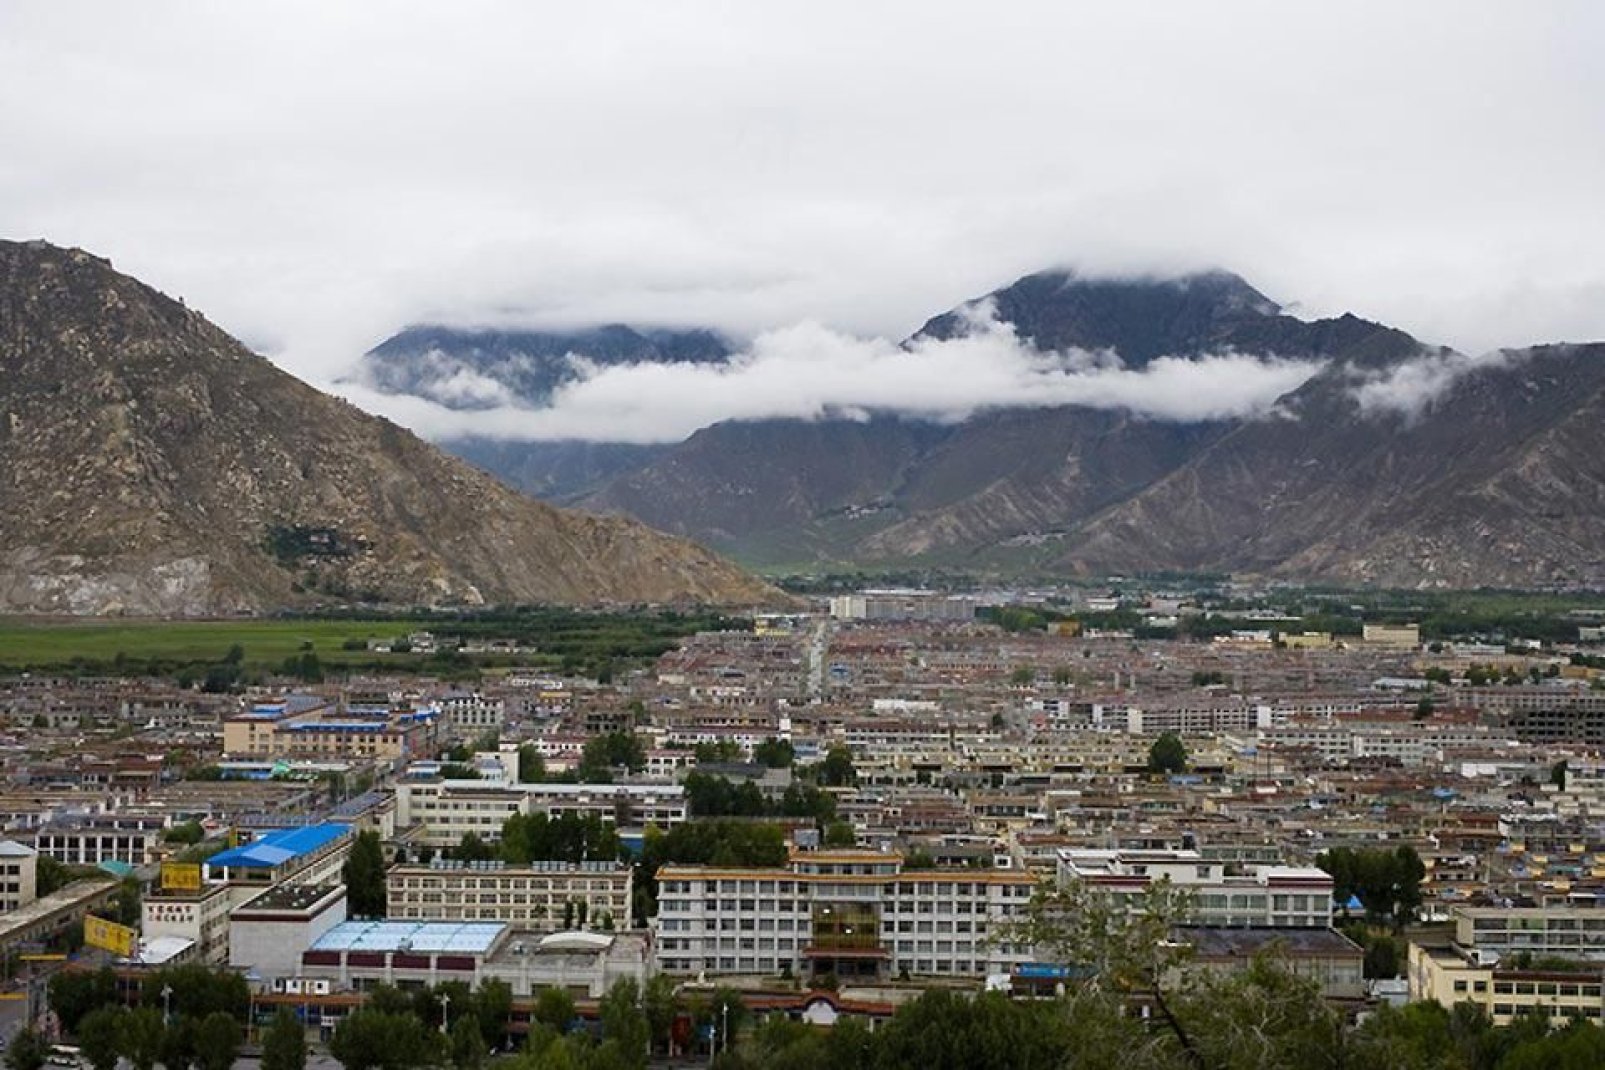 L'area del Tibet ha un'estensione di 2,5 milioni di chilometri quadrati, ovvero un quarto dell'intera Cina ed ospita 6 milioni di tibetani.